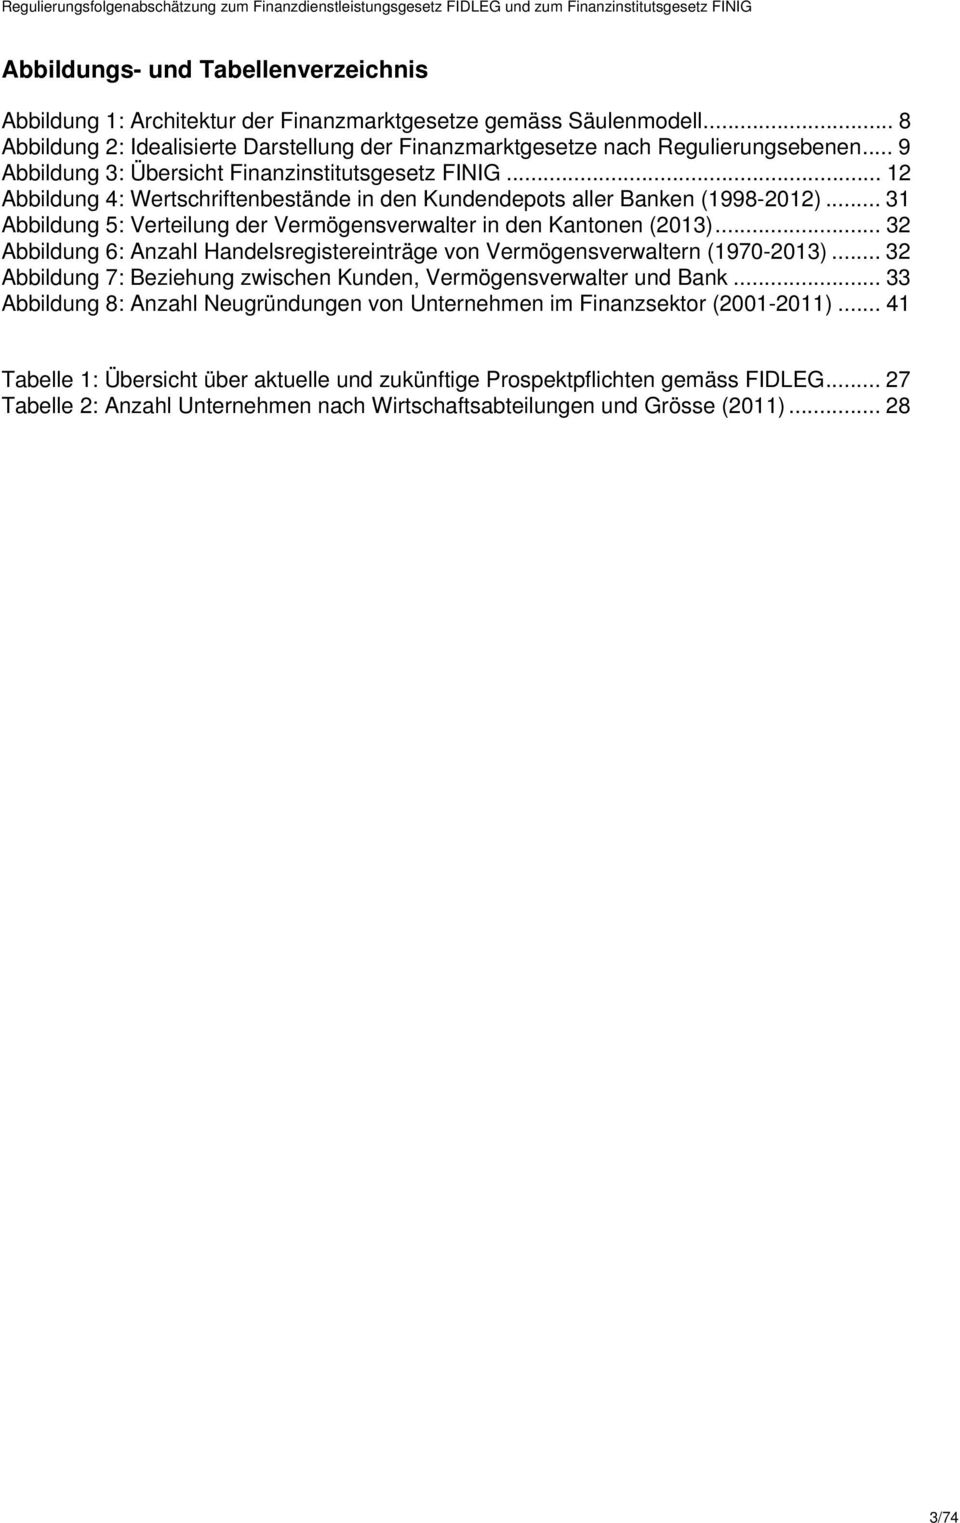 .. 31 Abbildung 5: Verteilung der Vermögensverwalter in den Kantonen (2013)... 32 Abbildung 6: Anzahl Handelsregistereinträge von Vermögensverwaltern (1970-2013).